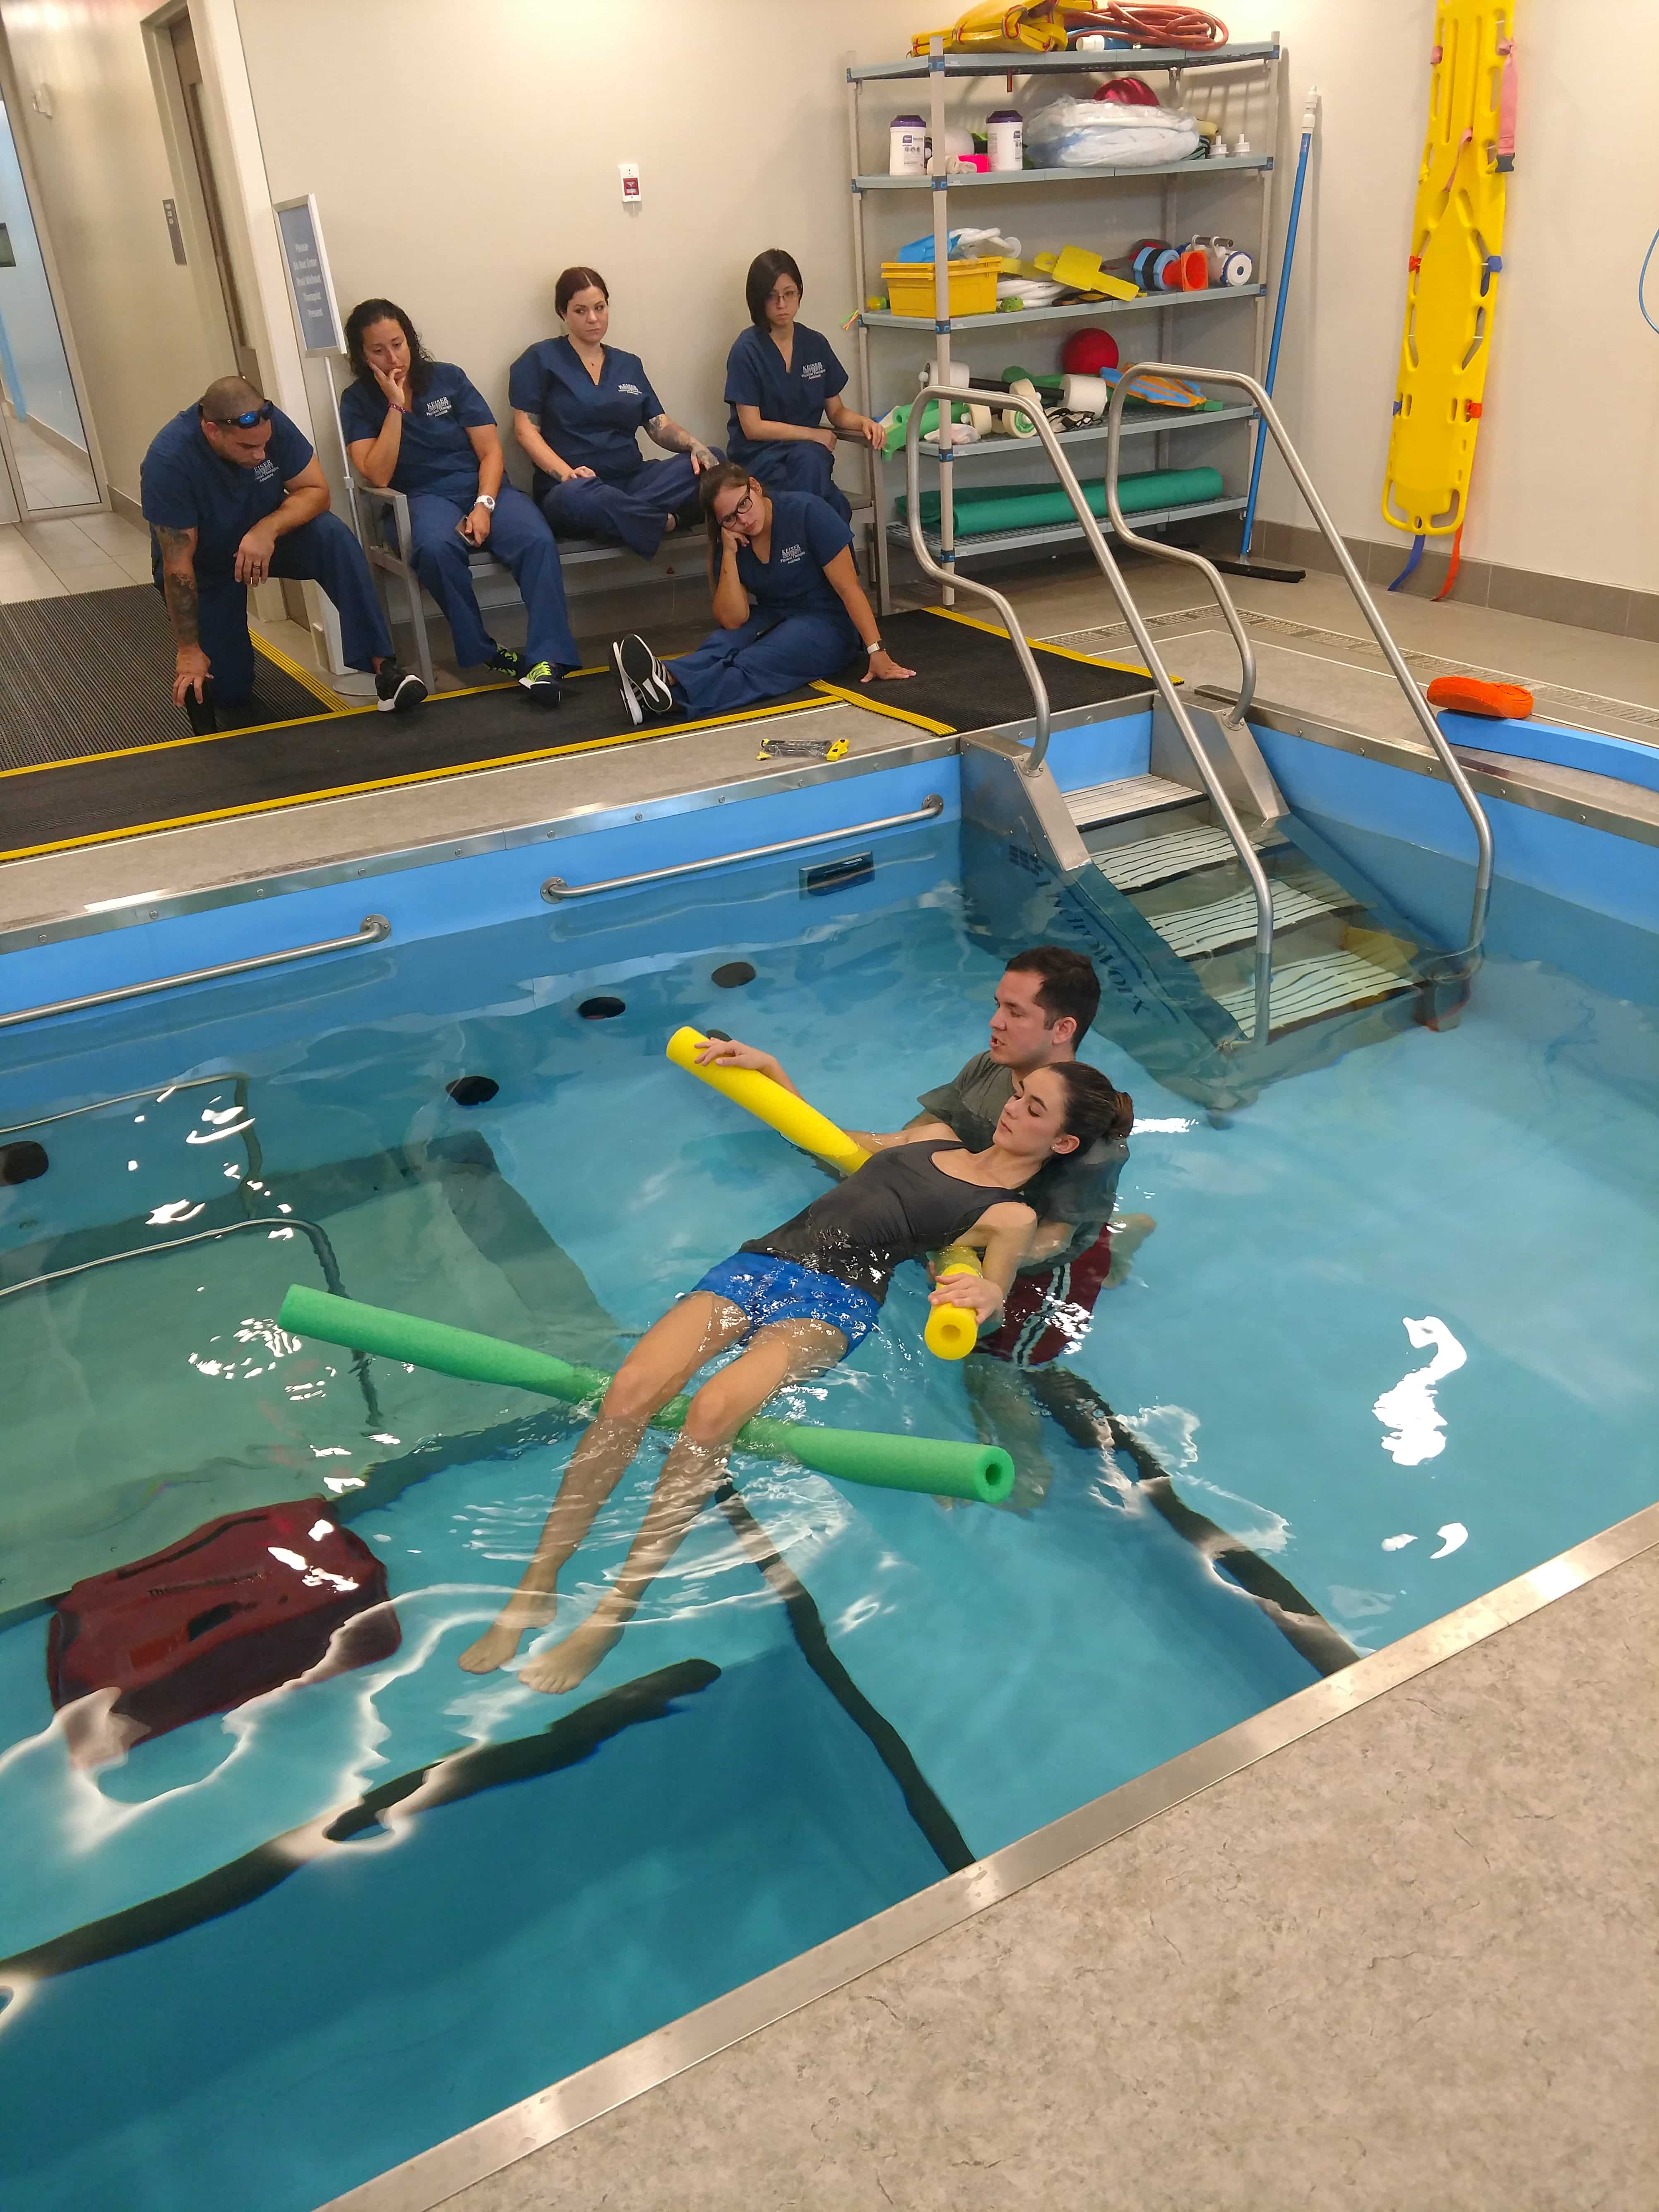 Lakeland Students Visit an Aquatic Therapy Facility